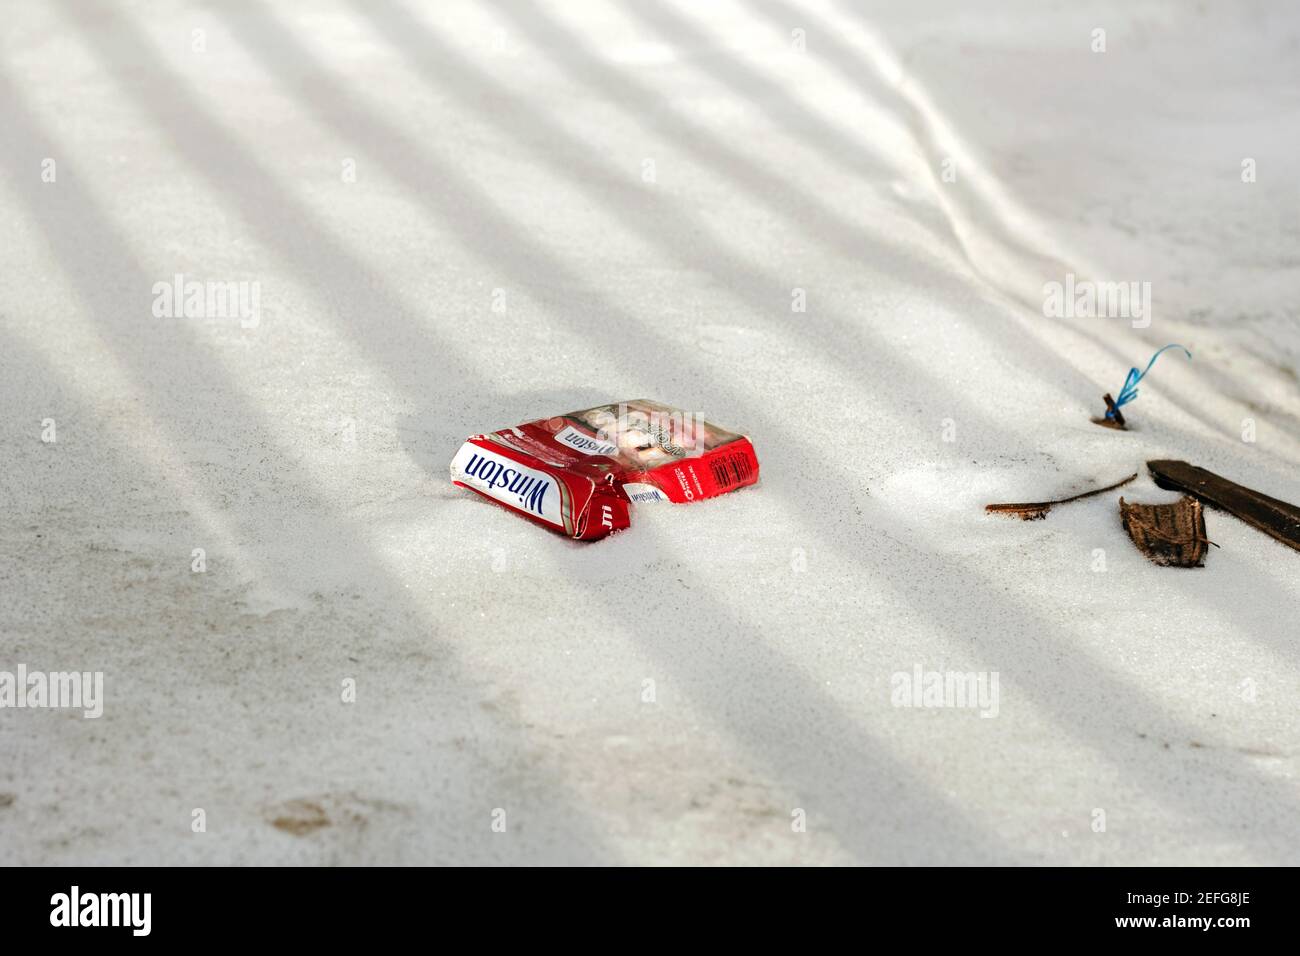 Februar, 3, 2017, - Moskau, Russland: Rote Packung Winston Zigaretten im Schnee für redaktionelle Verwendung Stockfoto